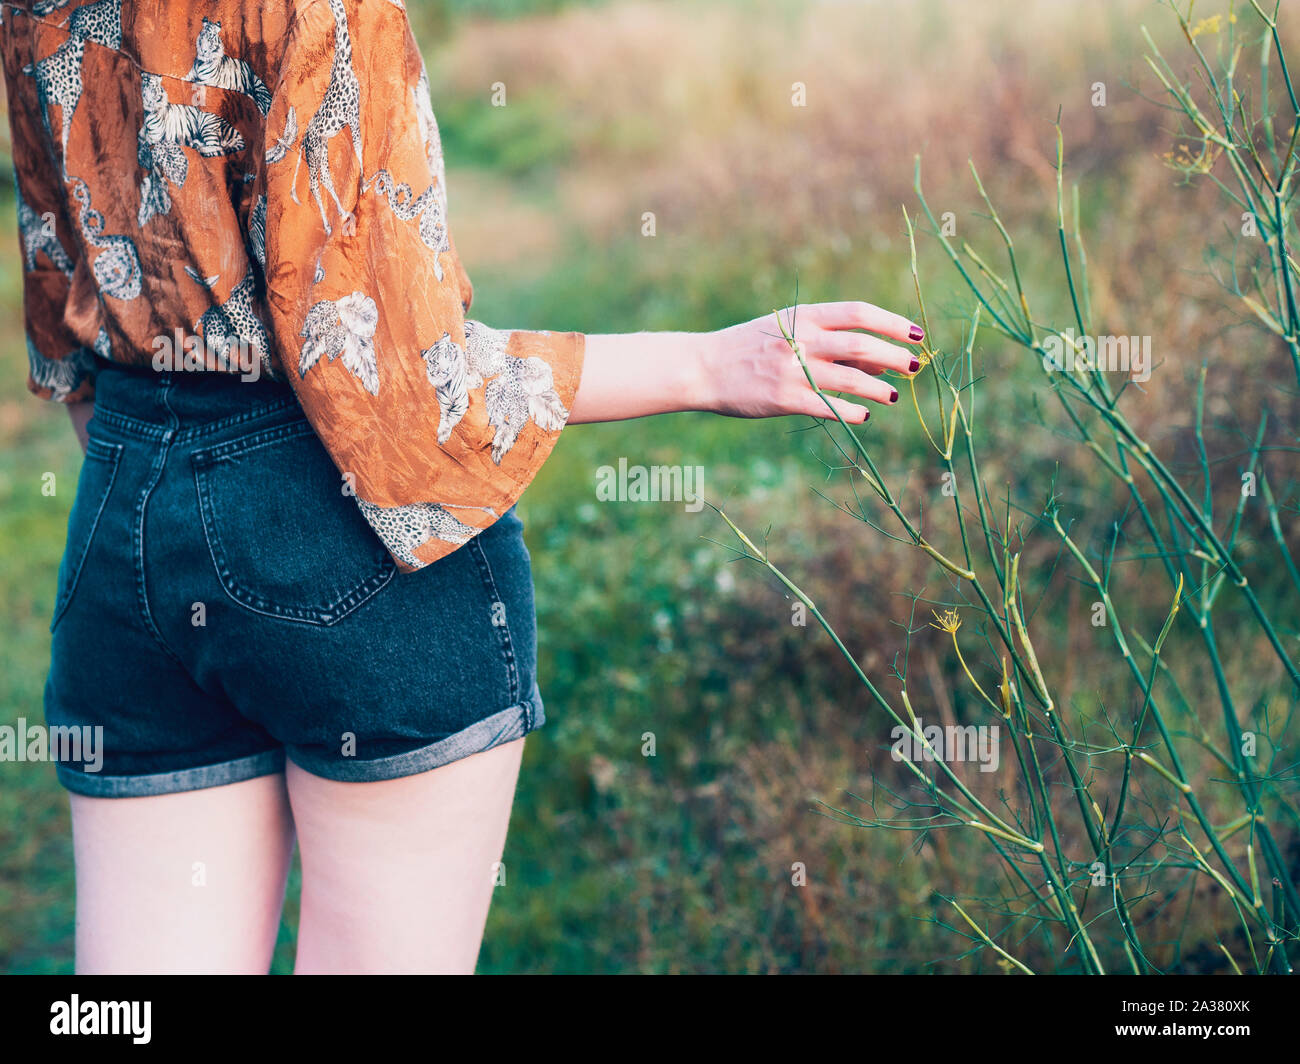 woman touching plants Stock Photo